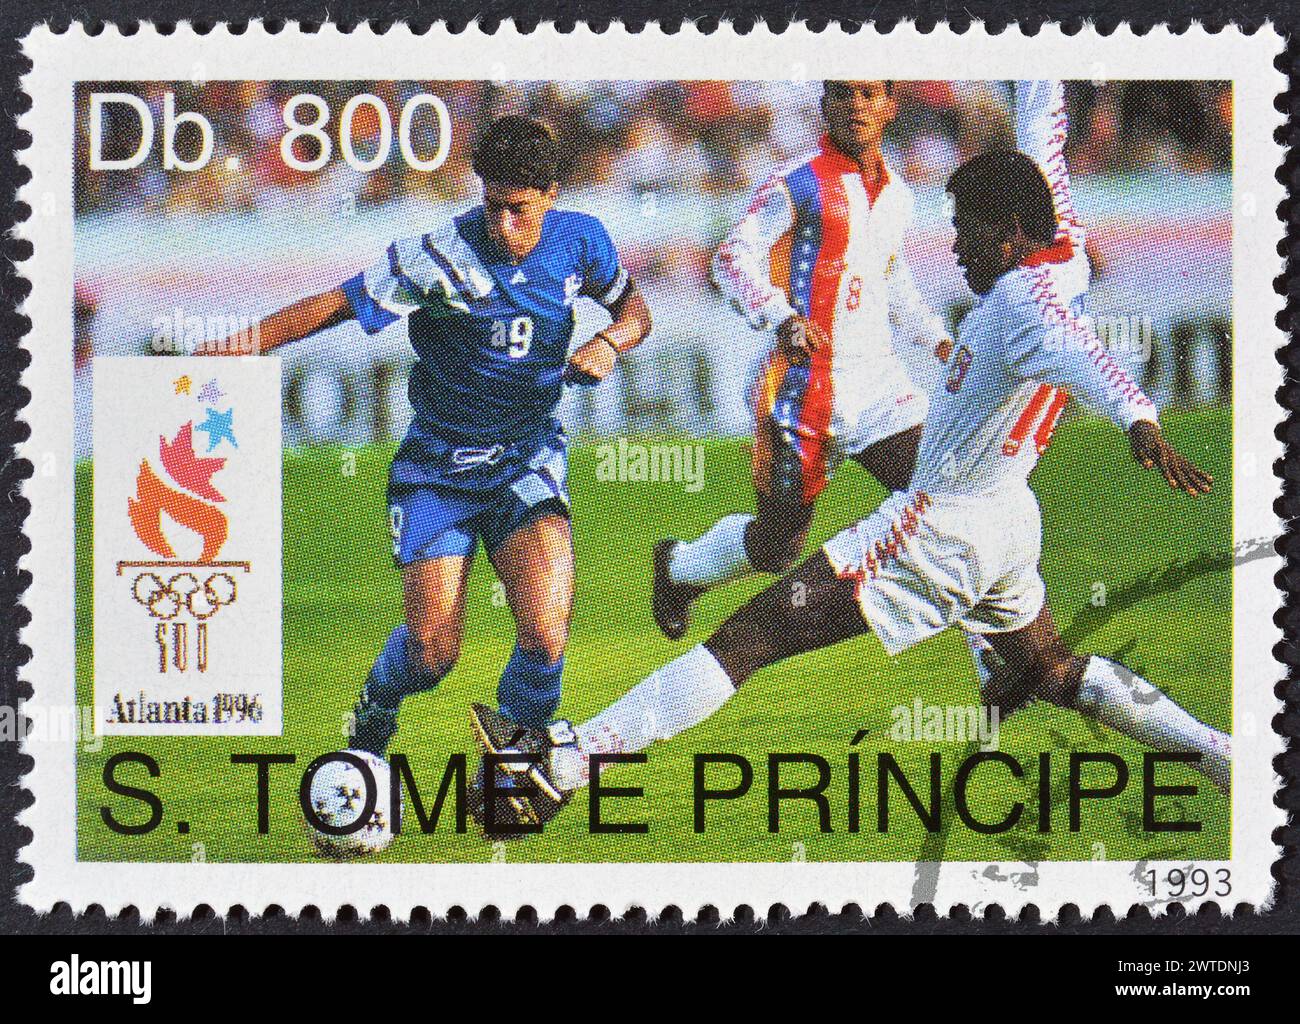 Francobollo cancellato stampato da São Tomé e Príncipe, che promuove la Coppa del mondo FIFA 1994 - USA, circa 1993. Foto Stock